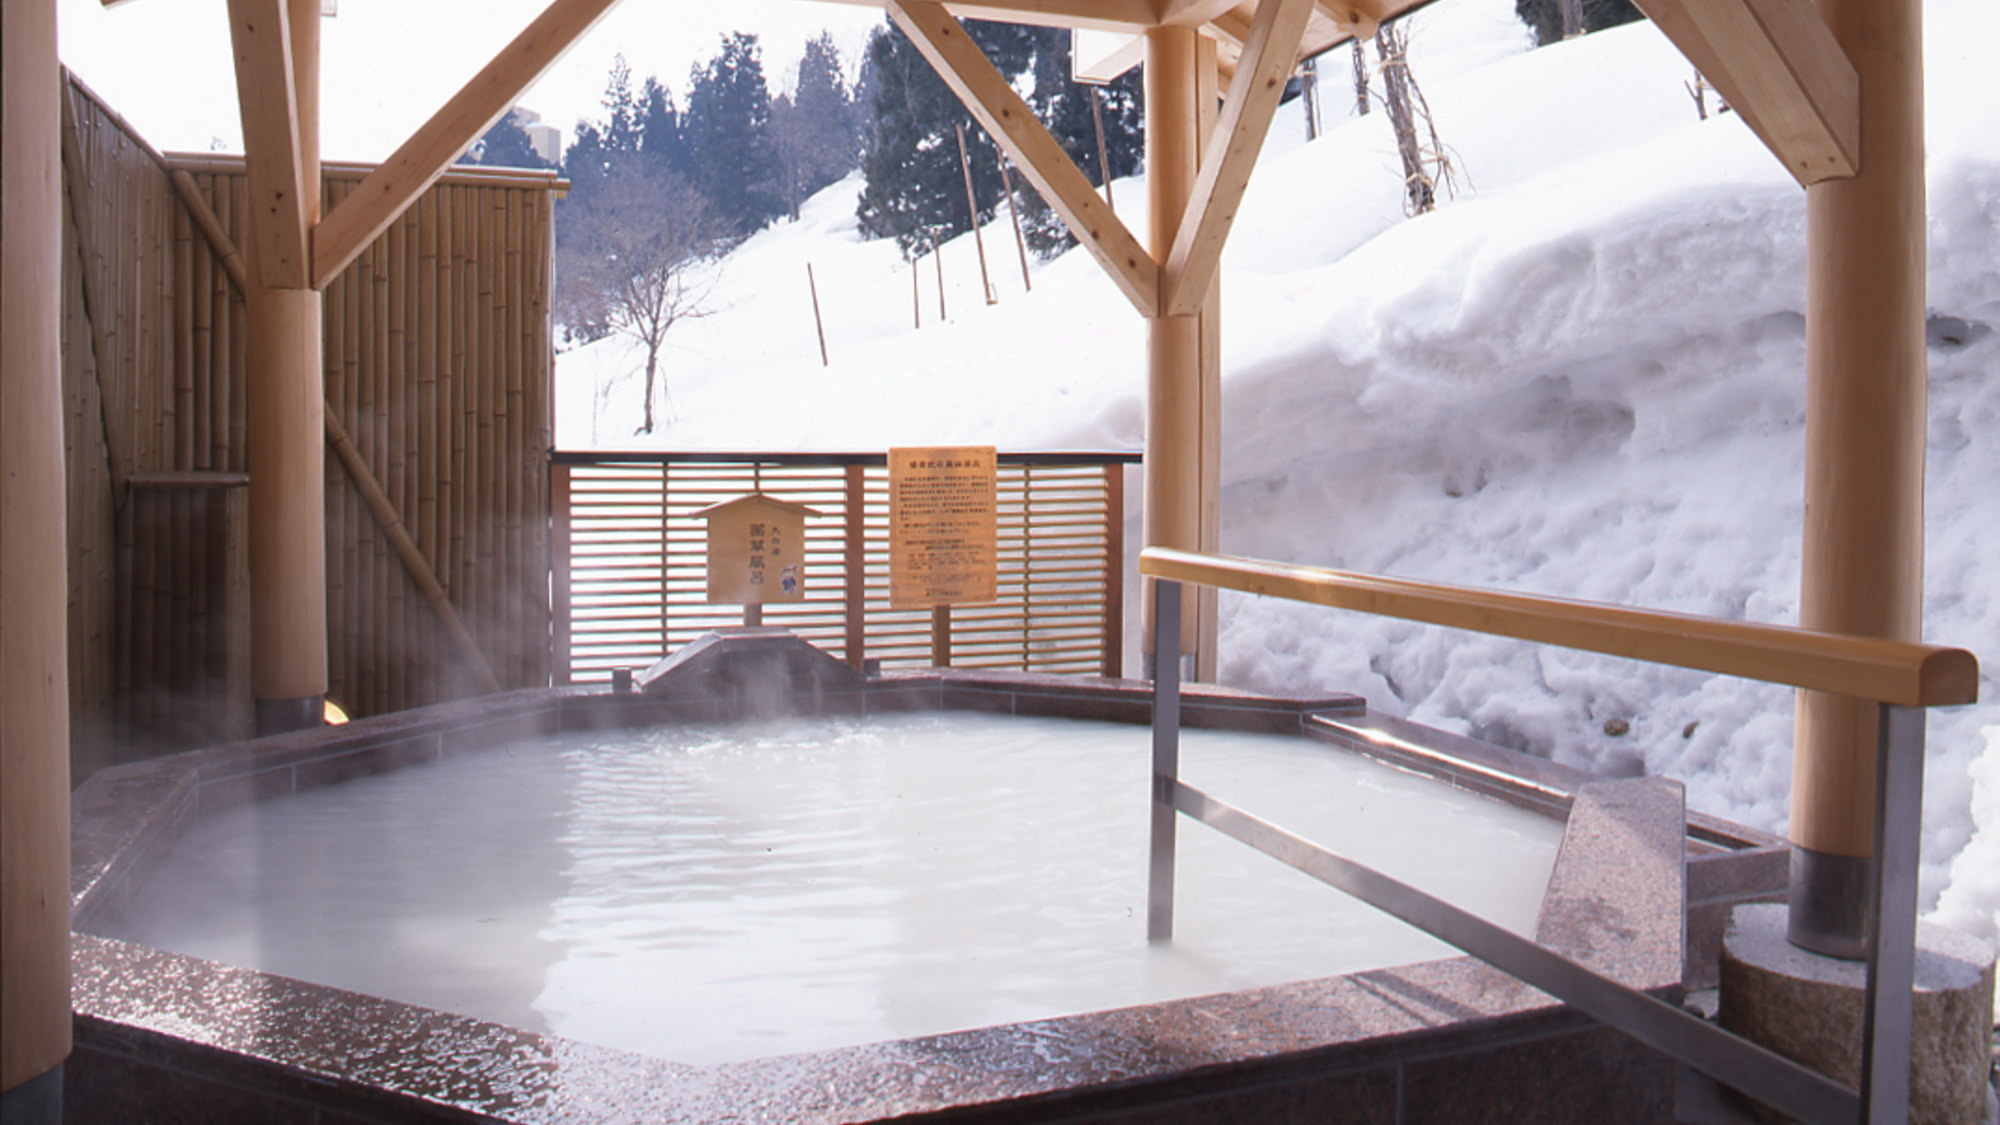 【山の湯】眺めの良い露天風呂や変わった蒸し風呂、洞窟風呂など10種類のお風呂